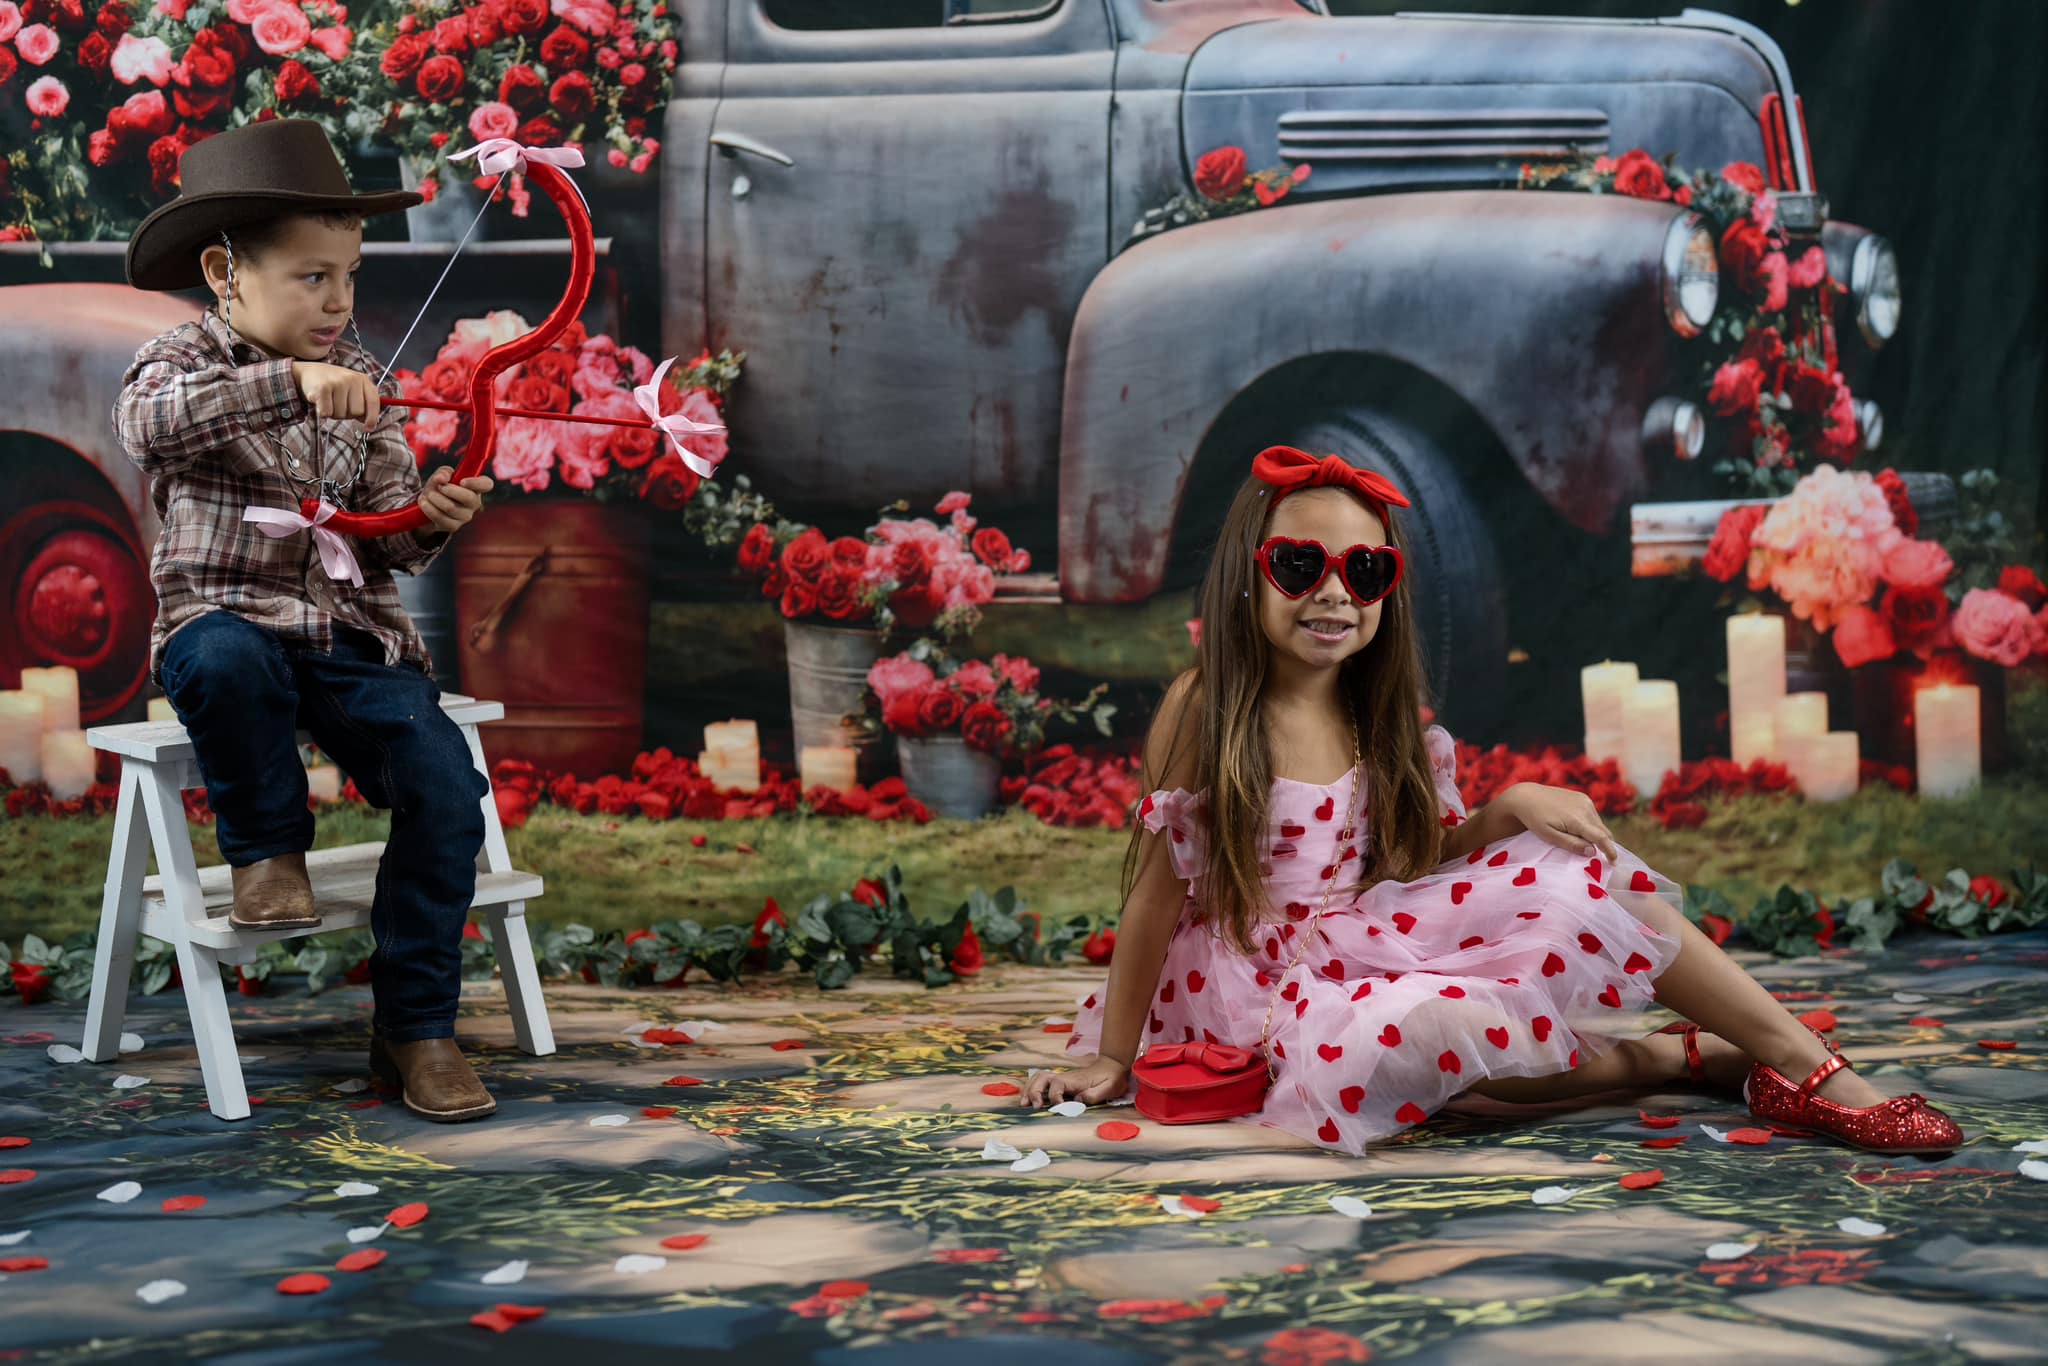 Kate Saint Valentin Camion complet de Roses Toile de fond pour la photographie